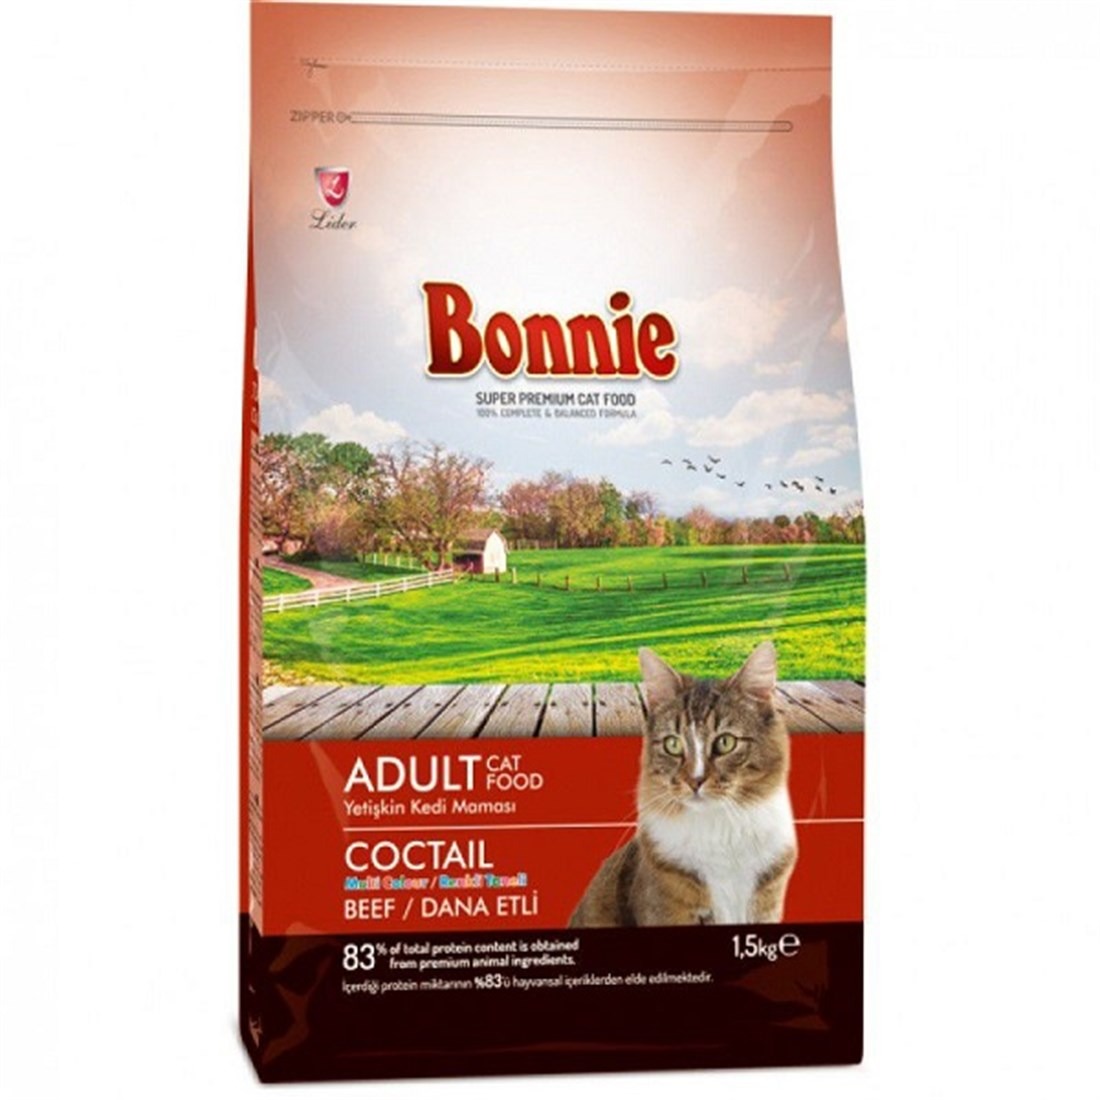 Bonnie Cat 1,5 Kg Coctail